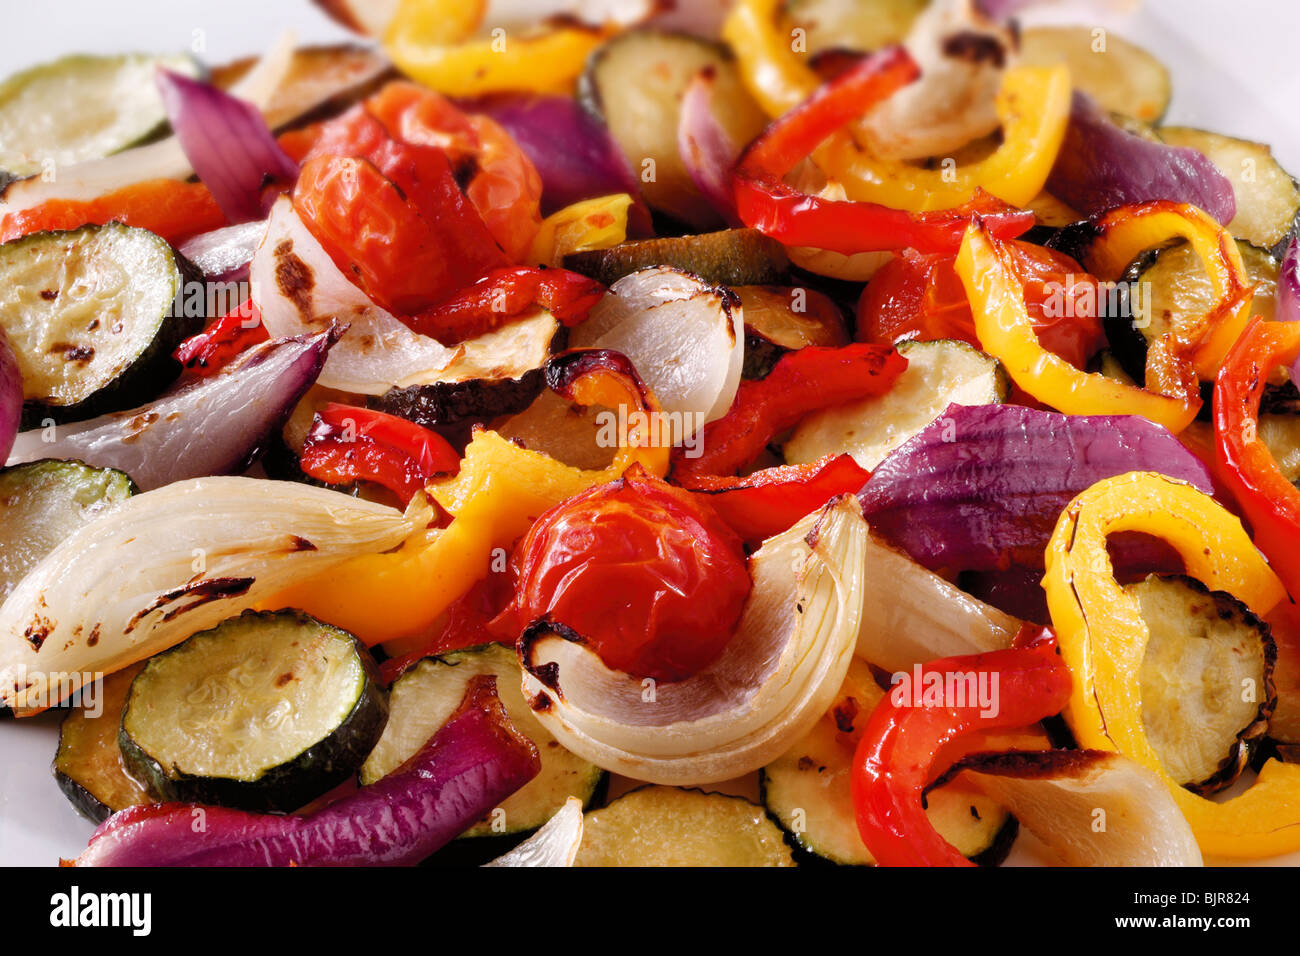 Arrosto misto di verdure, cipolle, peperoni e zucchine foto di cibo Foto Stock